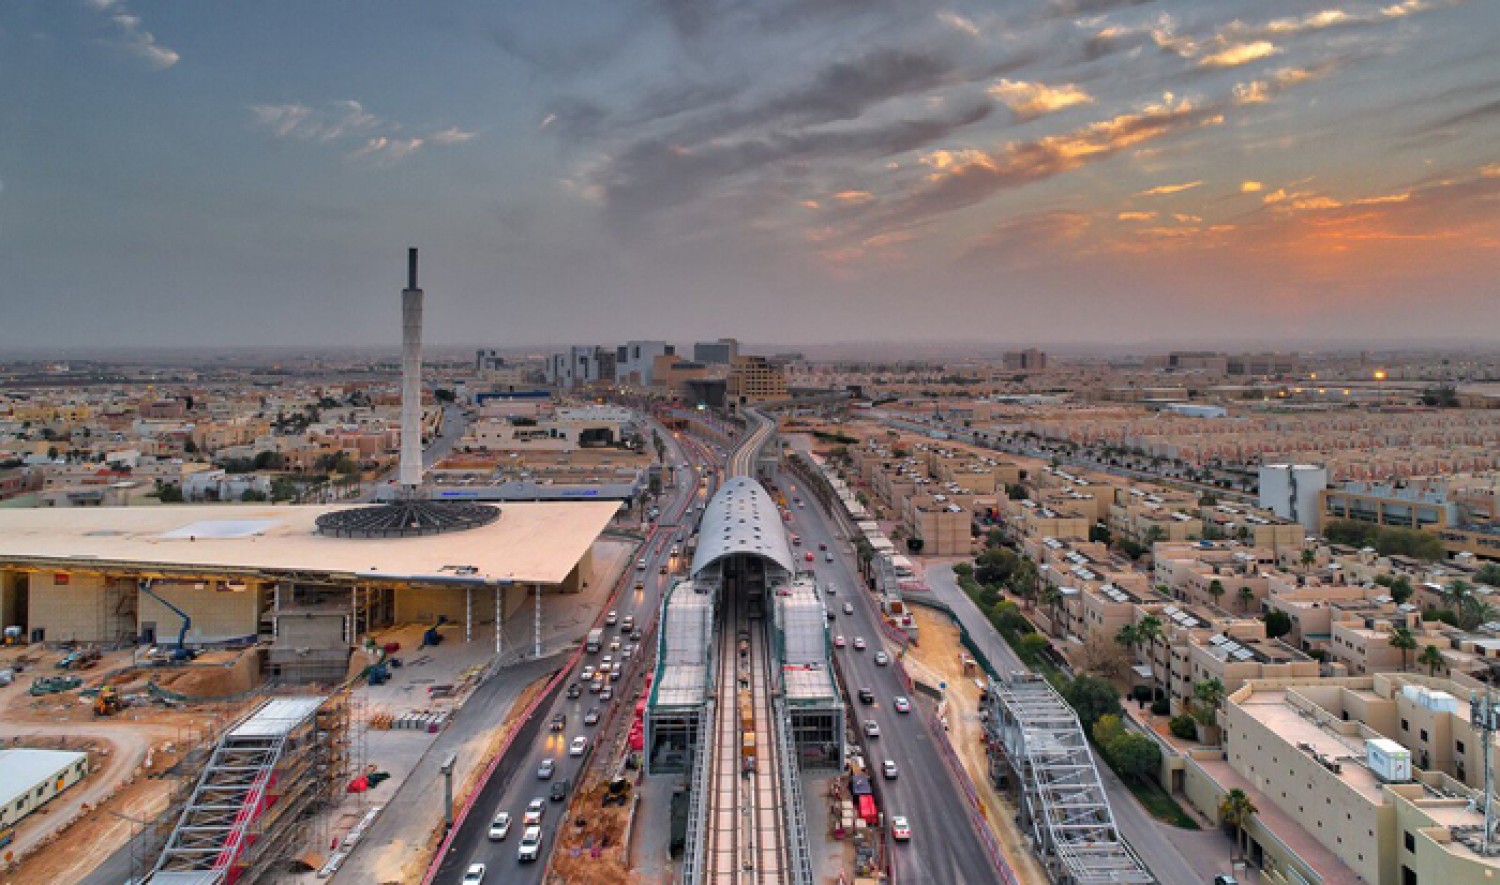 "المرور" يرد على إنتقاد أحد الإعلاميين بالإخفاق بإدارة الحركة المرورية في الرياض 8